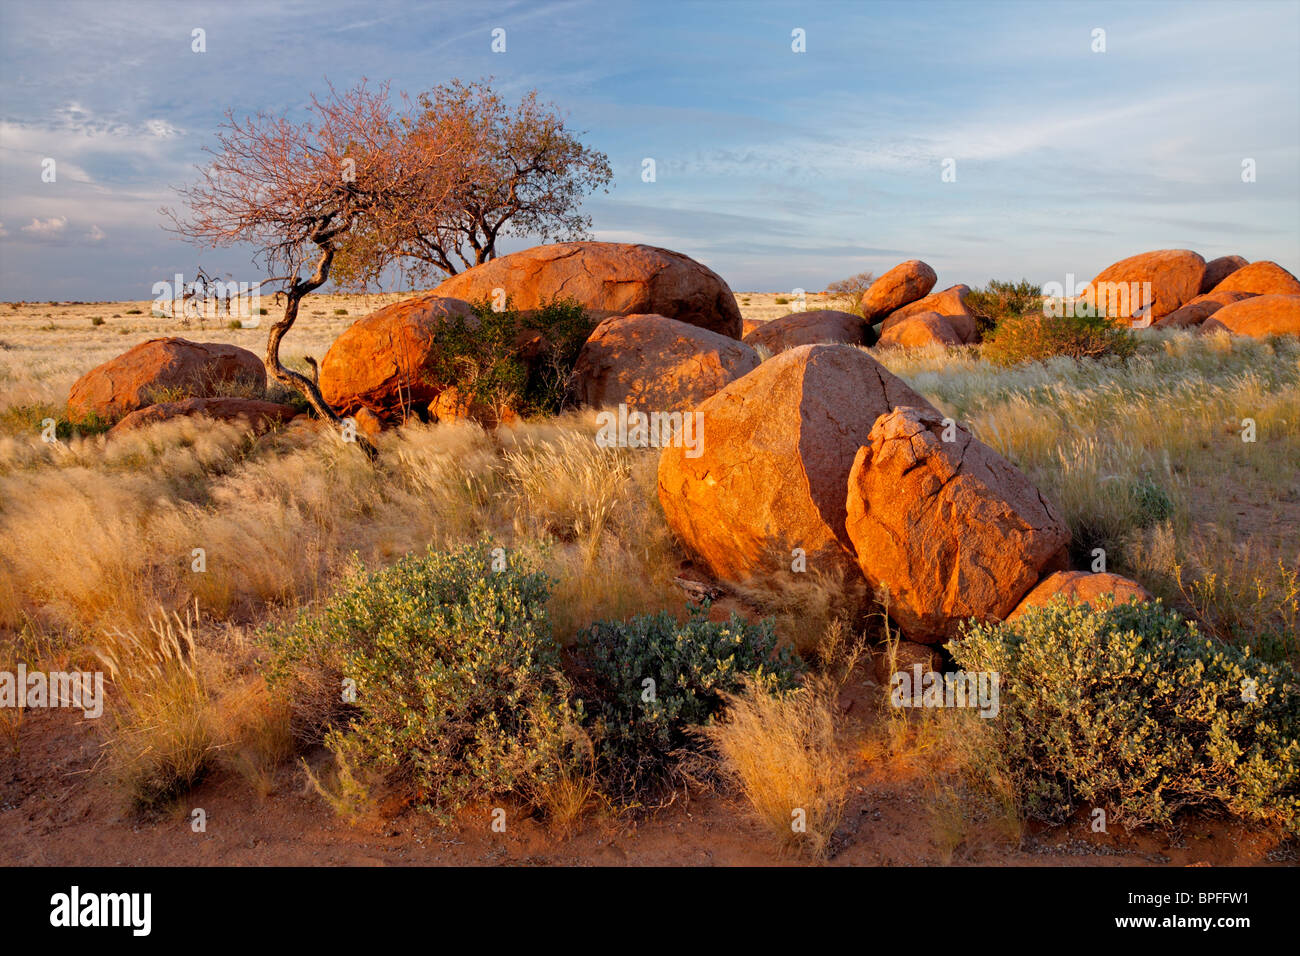 Paesaggio con massi di granito, alberi e cielo blu, Namibia, Sud Africa Foto Stock